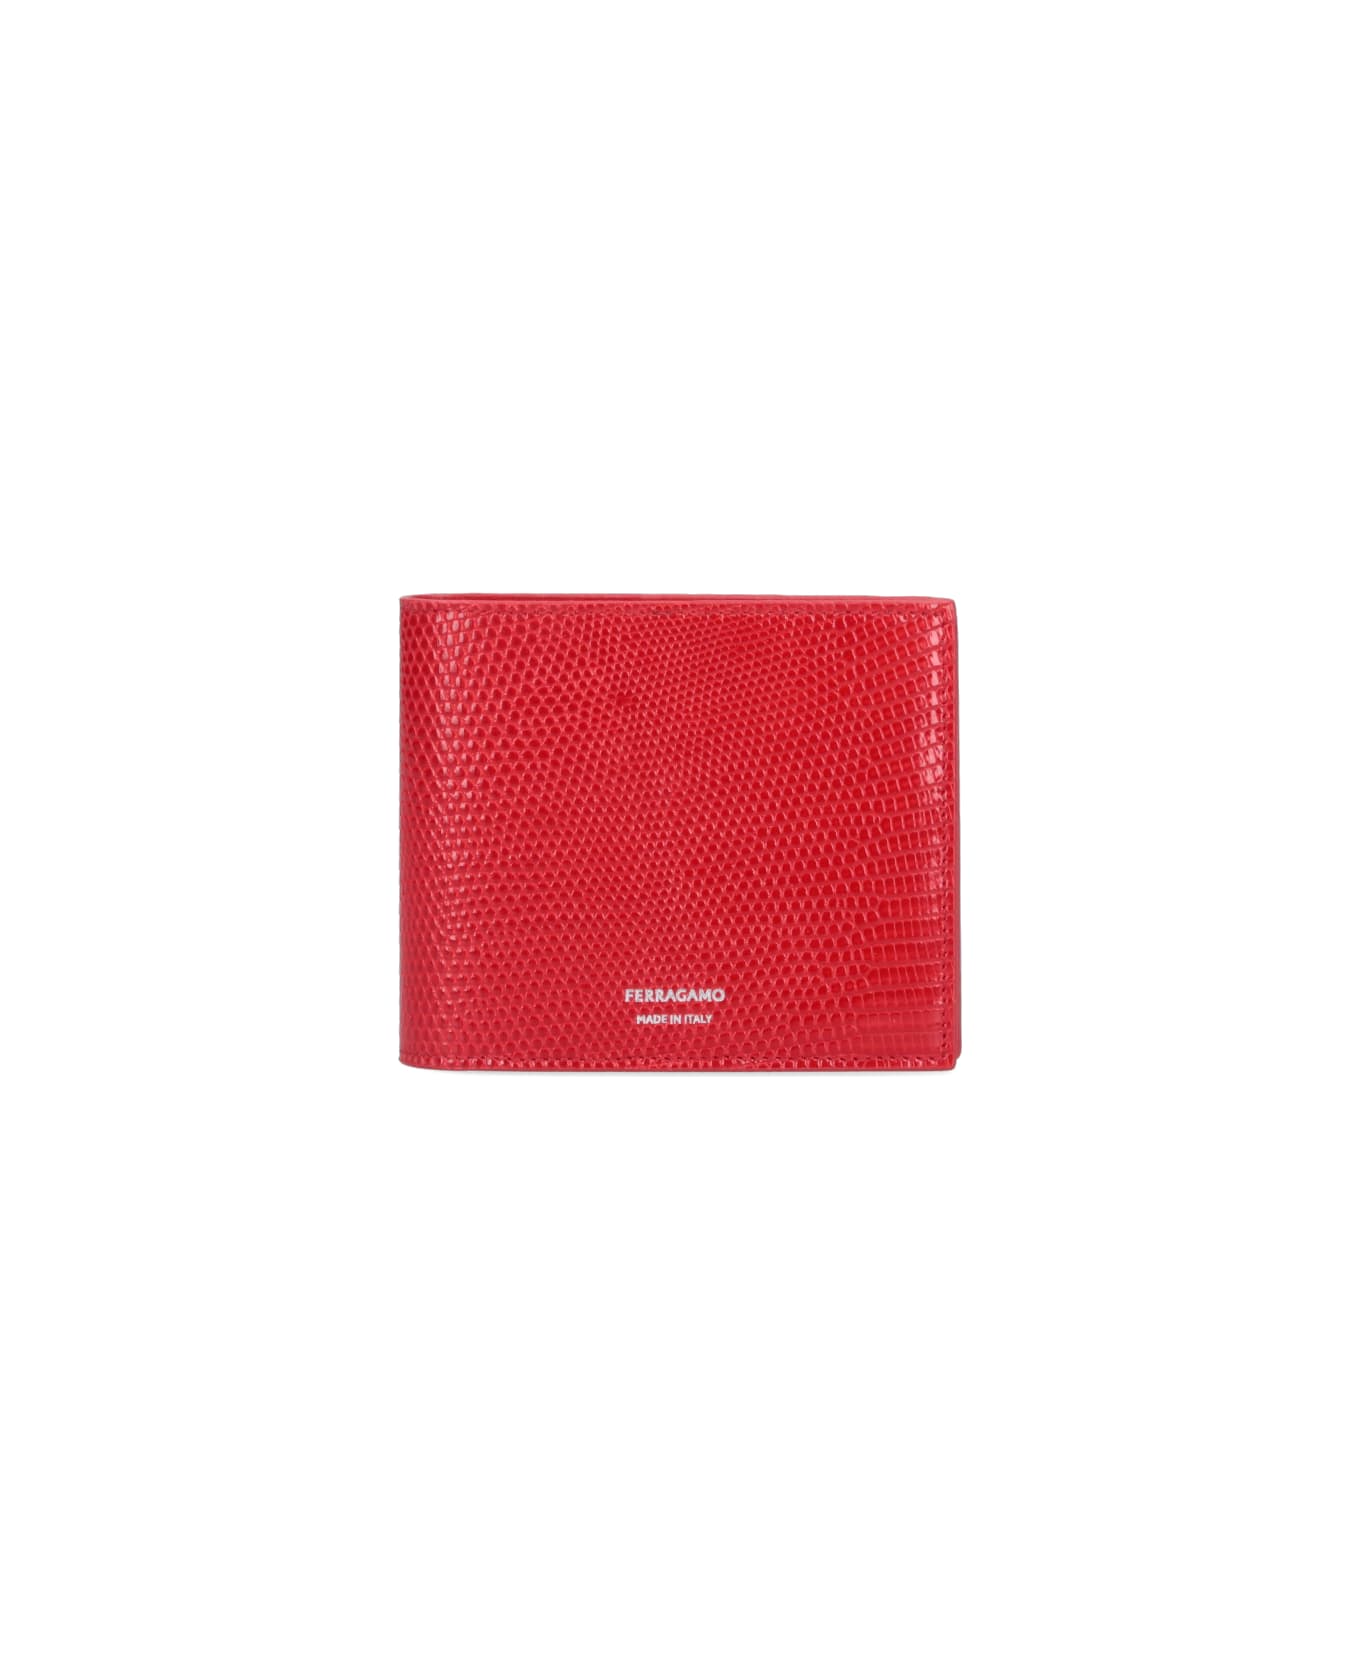 Ferragamo Lizard Wallet - Red